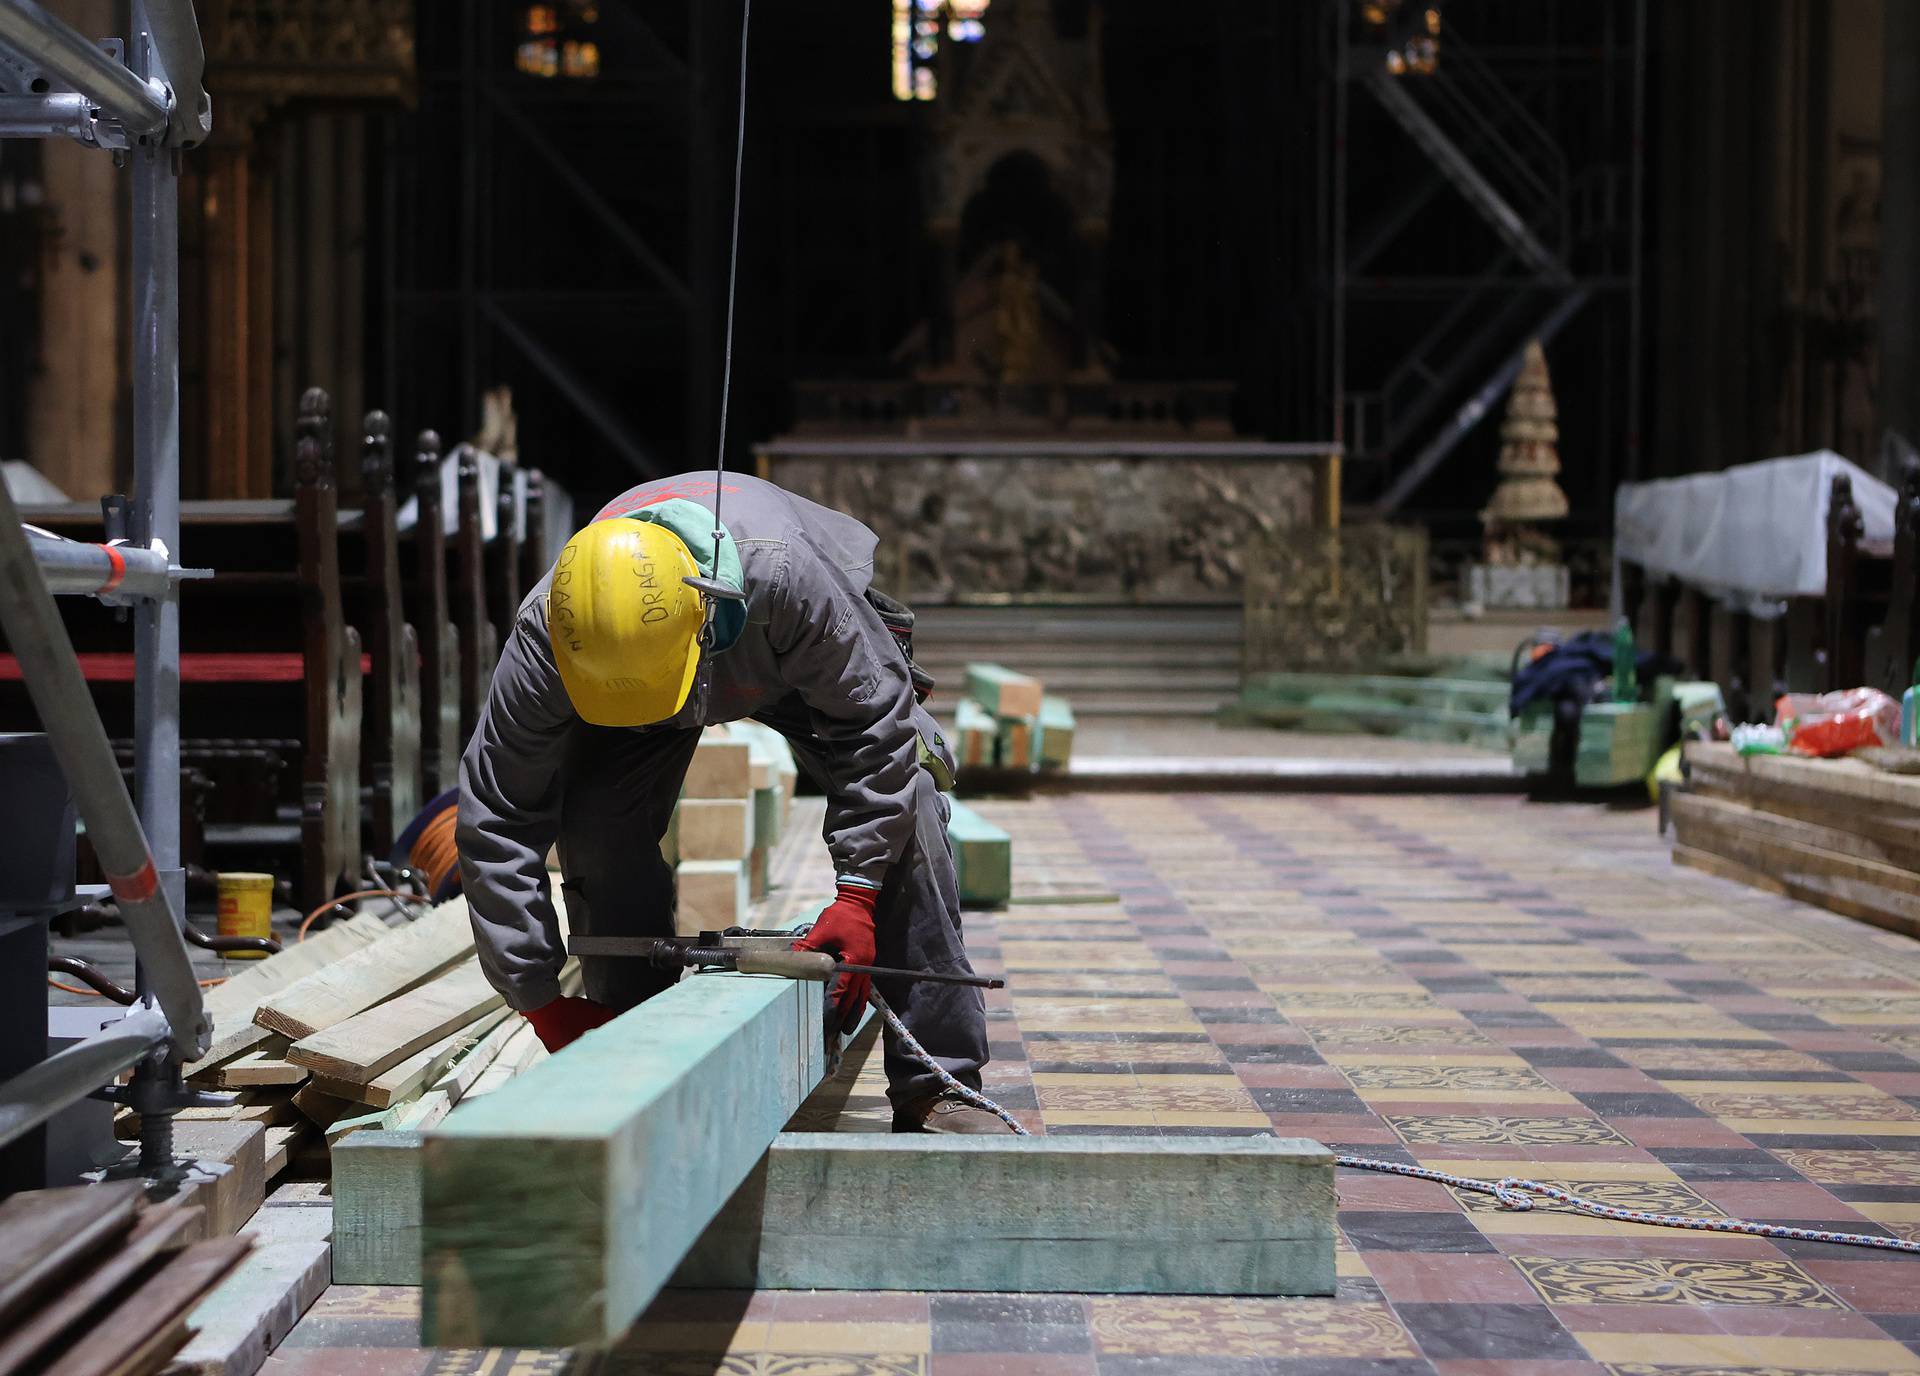 Katedrala godinu dana nakon potresa: Radnici umjesto vjernika, skele umjesto kipova